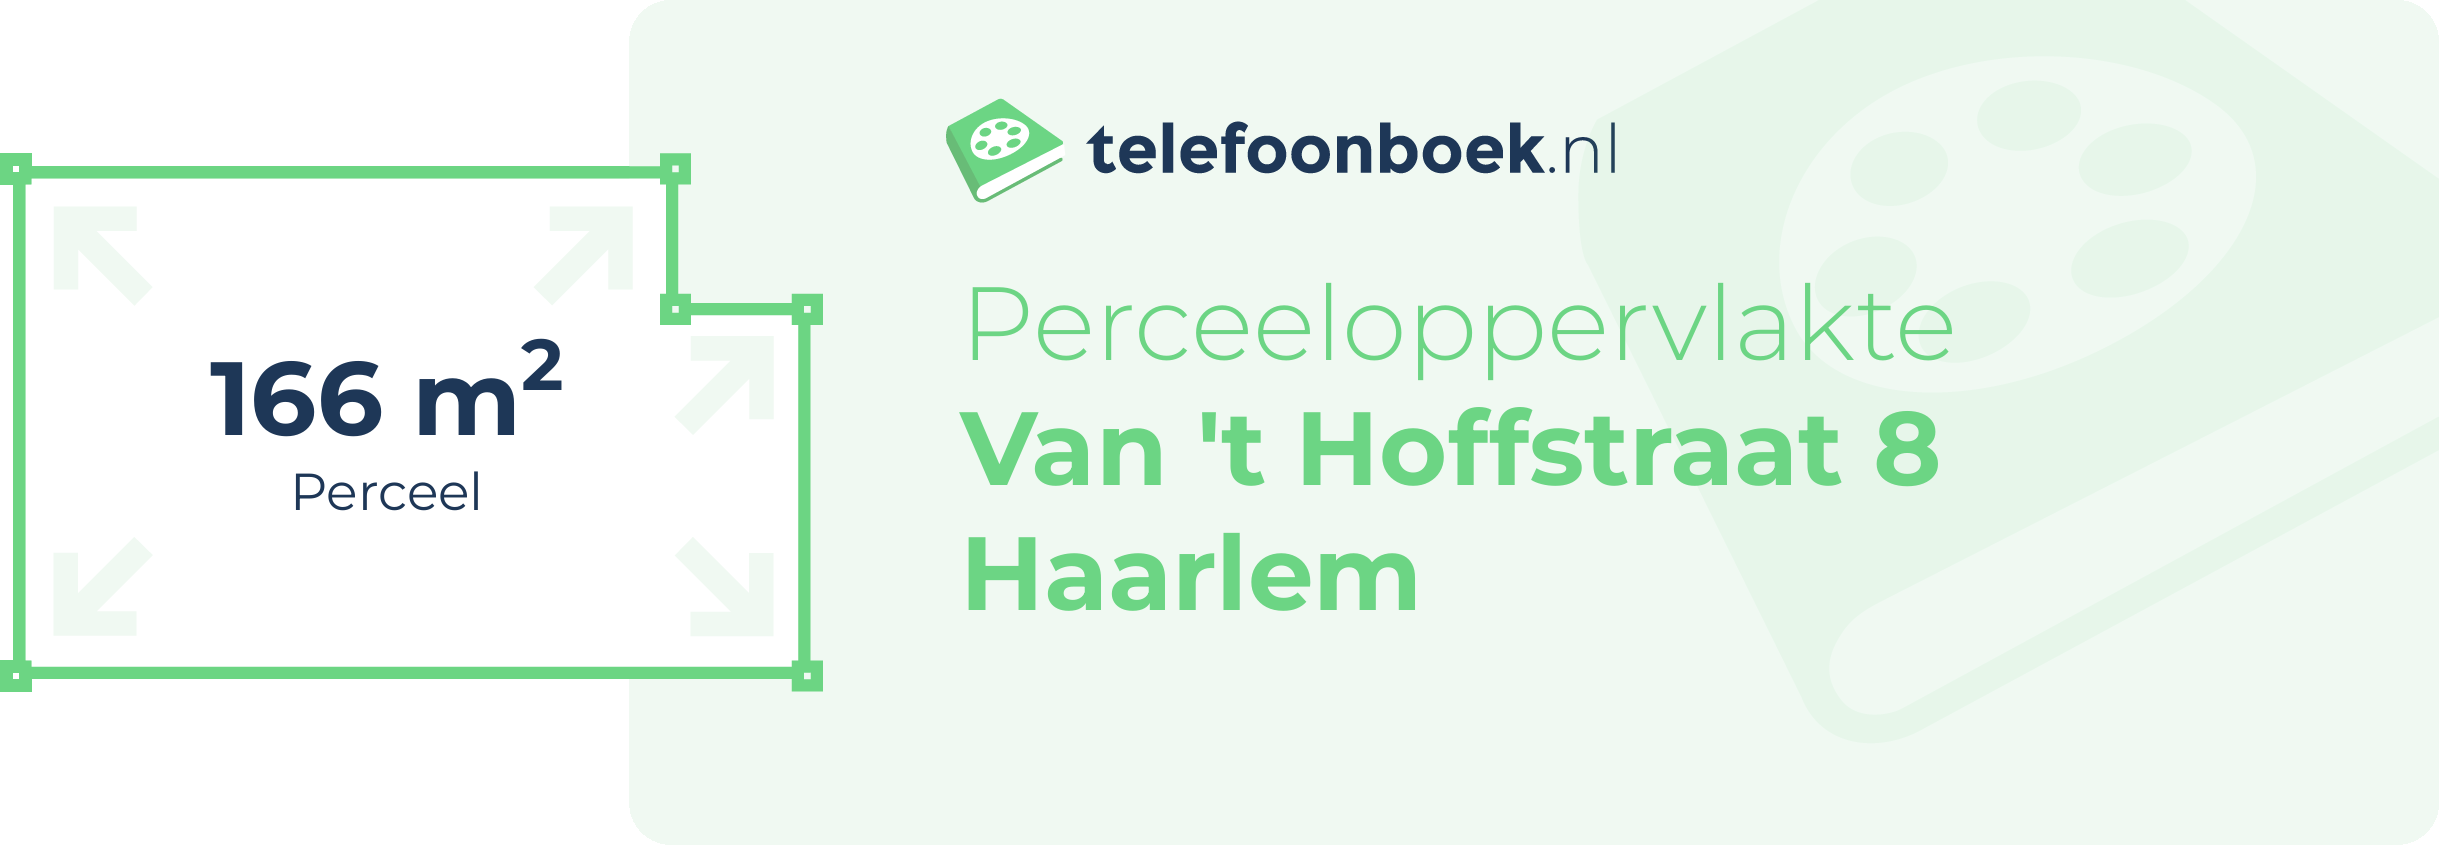 Perceeloppervlakte Van 't Hoffstraat 8 Haarlem